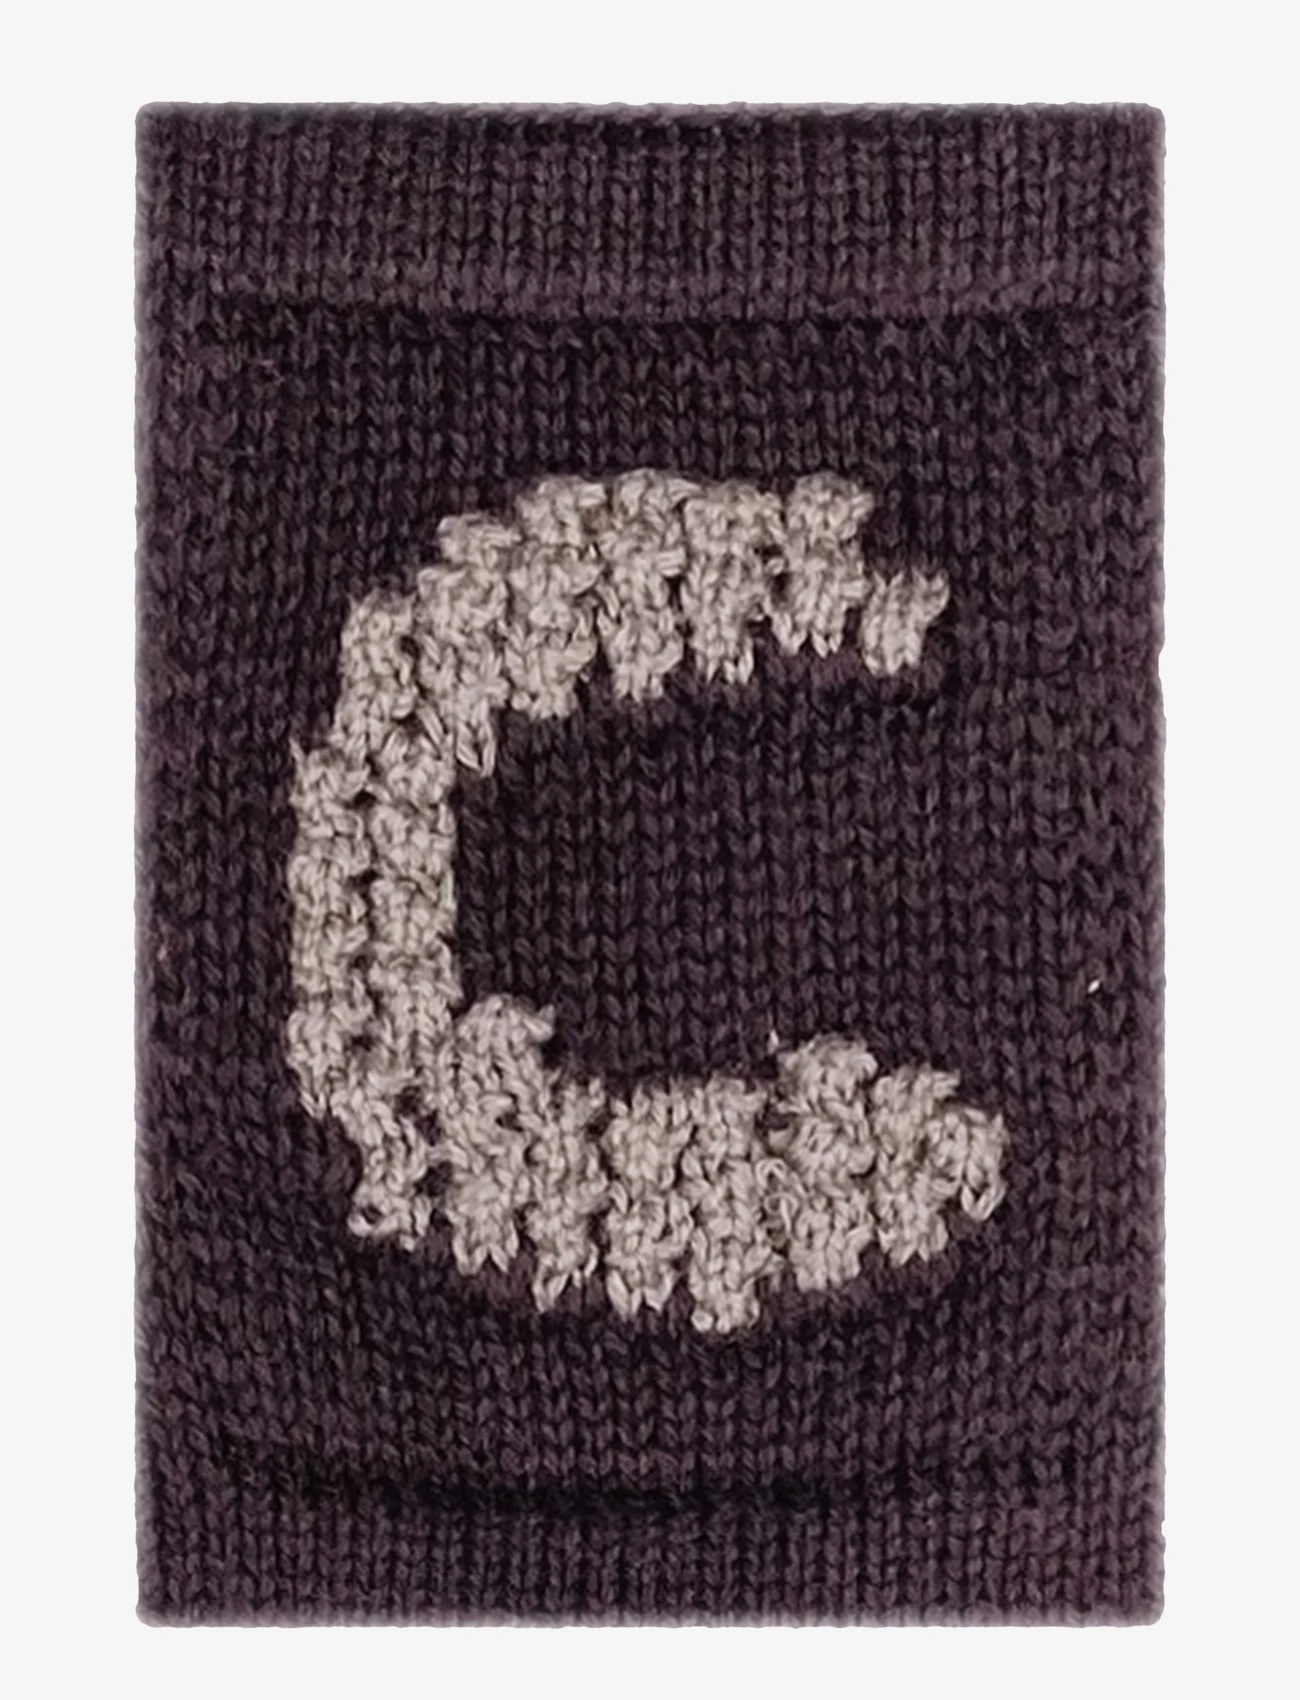 Smallstuff - Knitted letter C, nature - die niedrigsten preise - c beige - 0